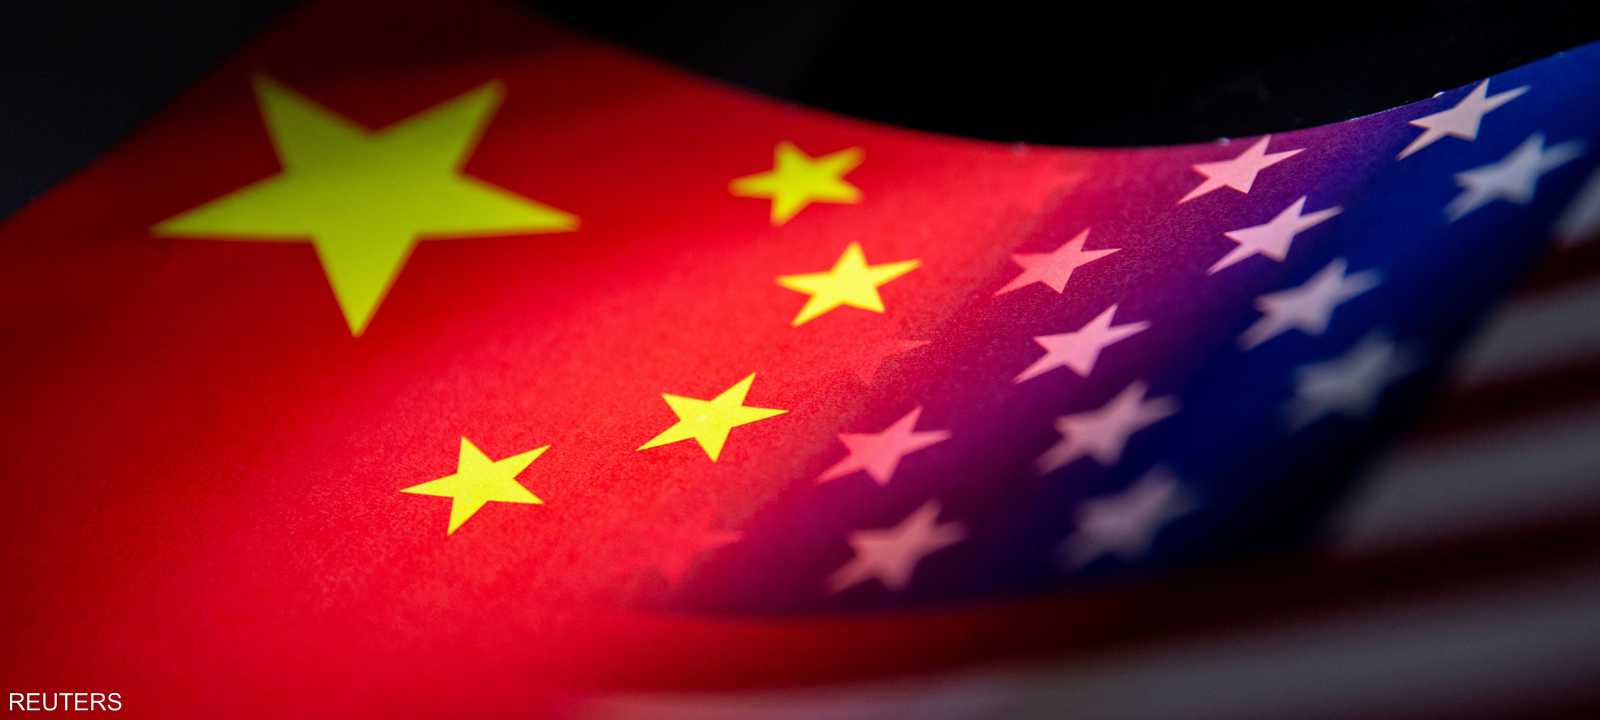 العلاقات لا تزال متوترة بين الصين وأميركا مع نهاية 2022